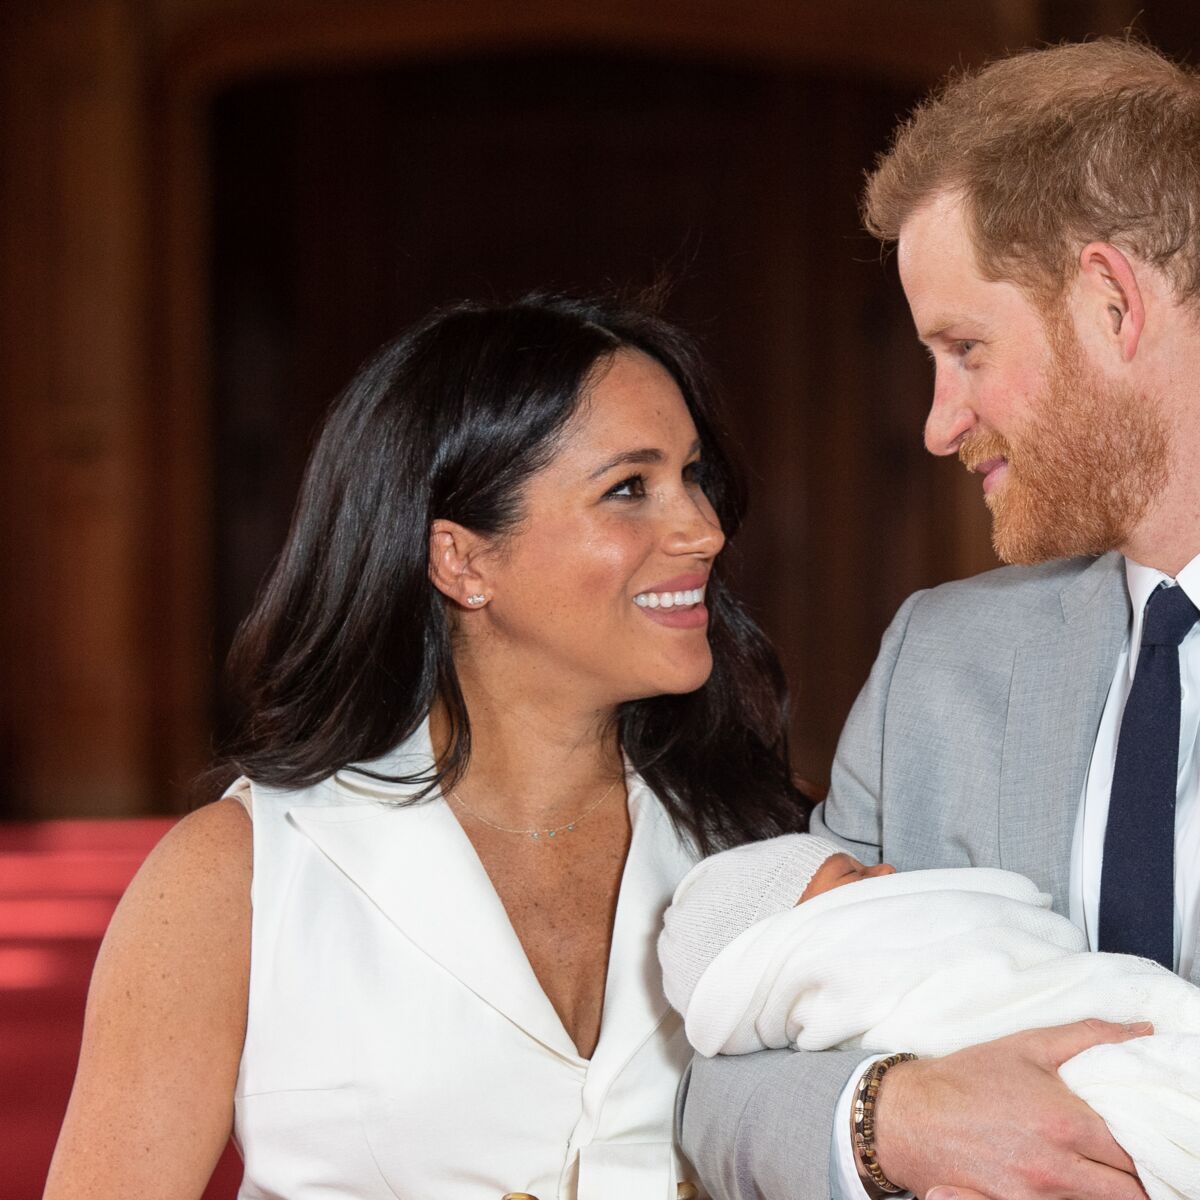 Photos Naissance Du Royal Baby Comment Harry Et Meghan Se Differencie De Kate Et William Femme Actuelle Le Mag